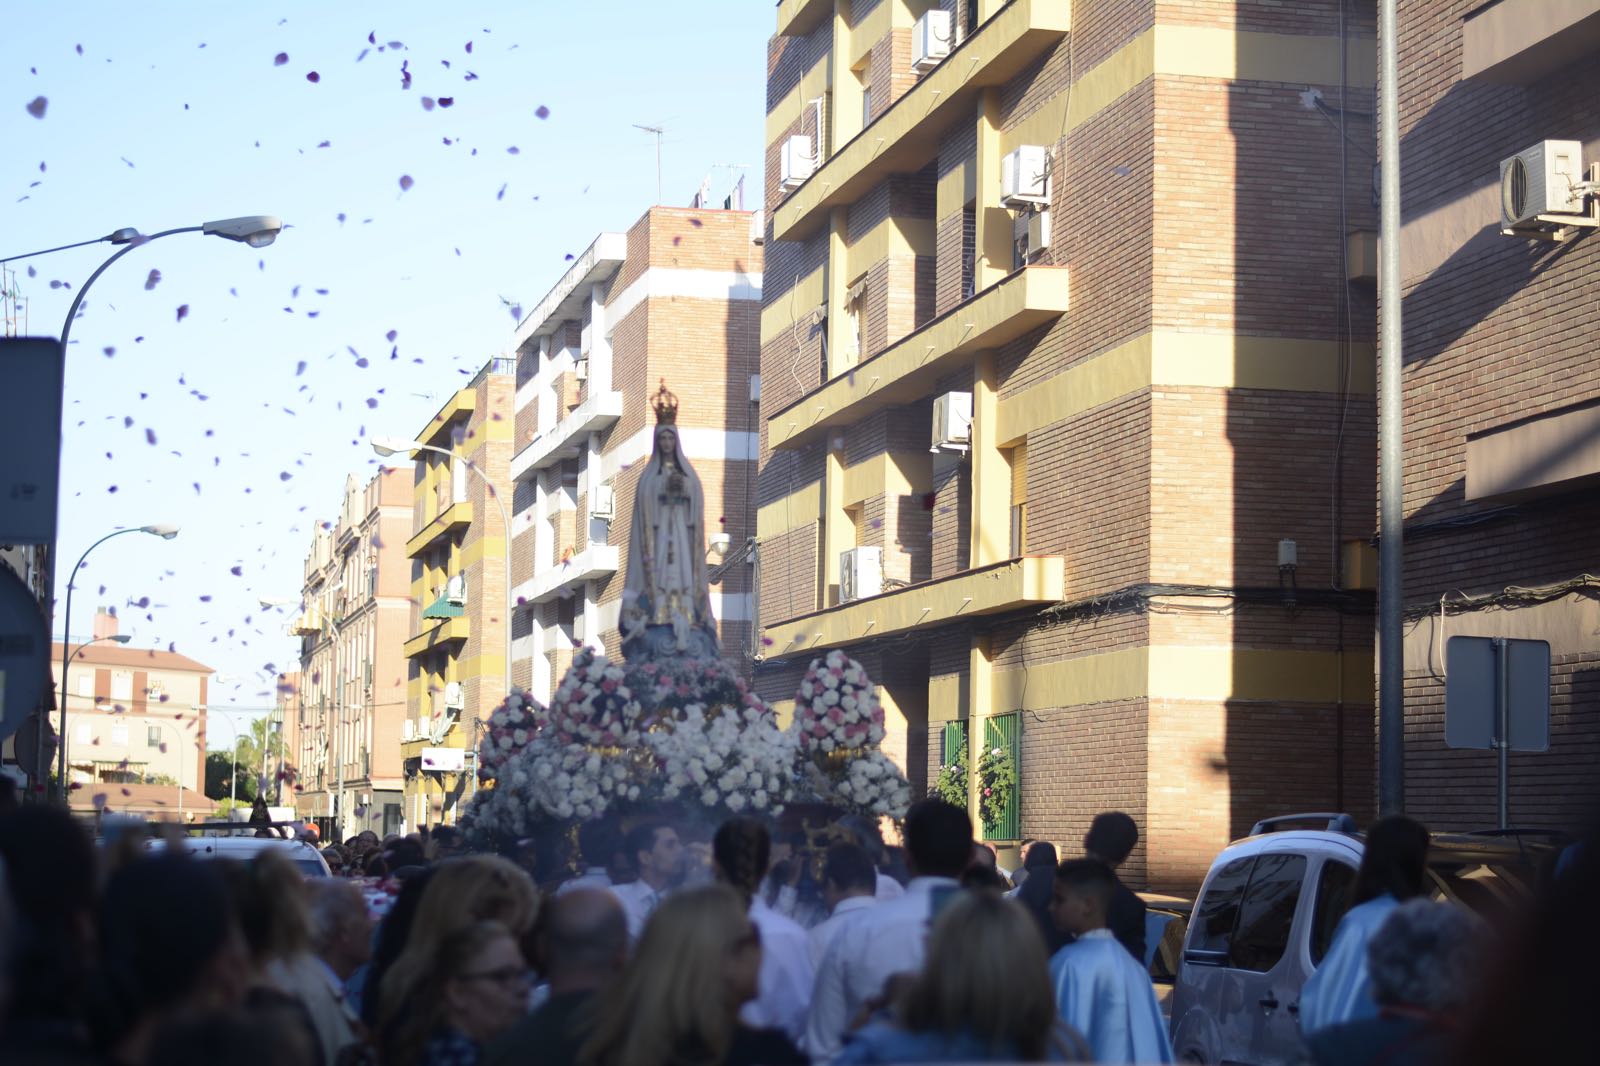 La procesión de Fátima en imágenes